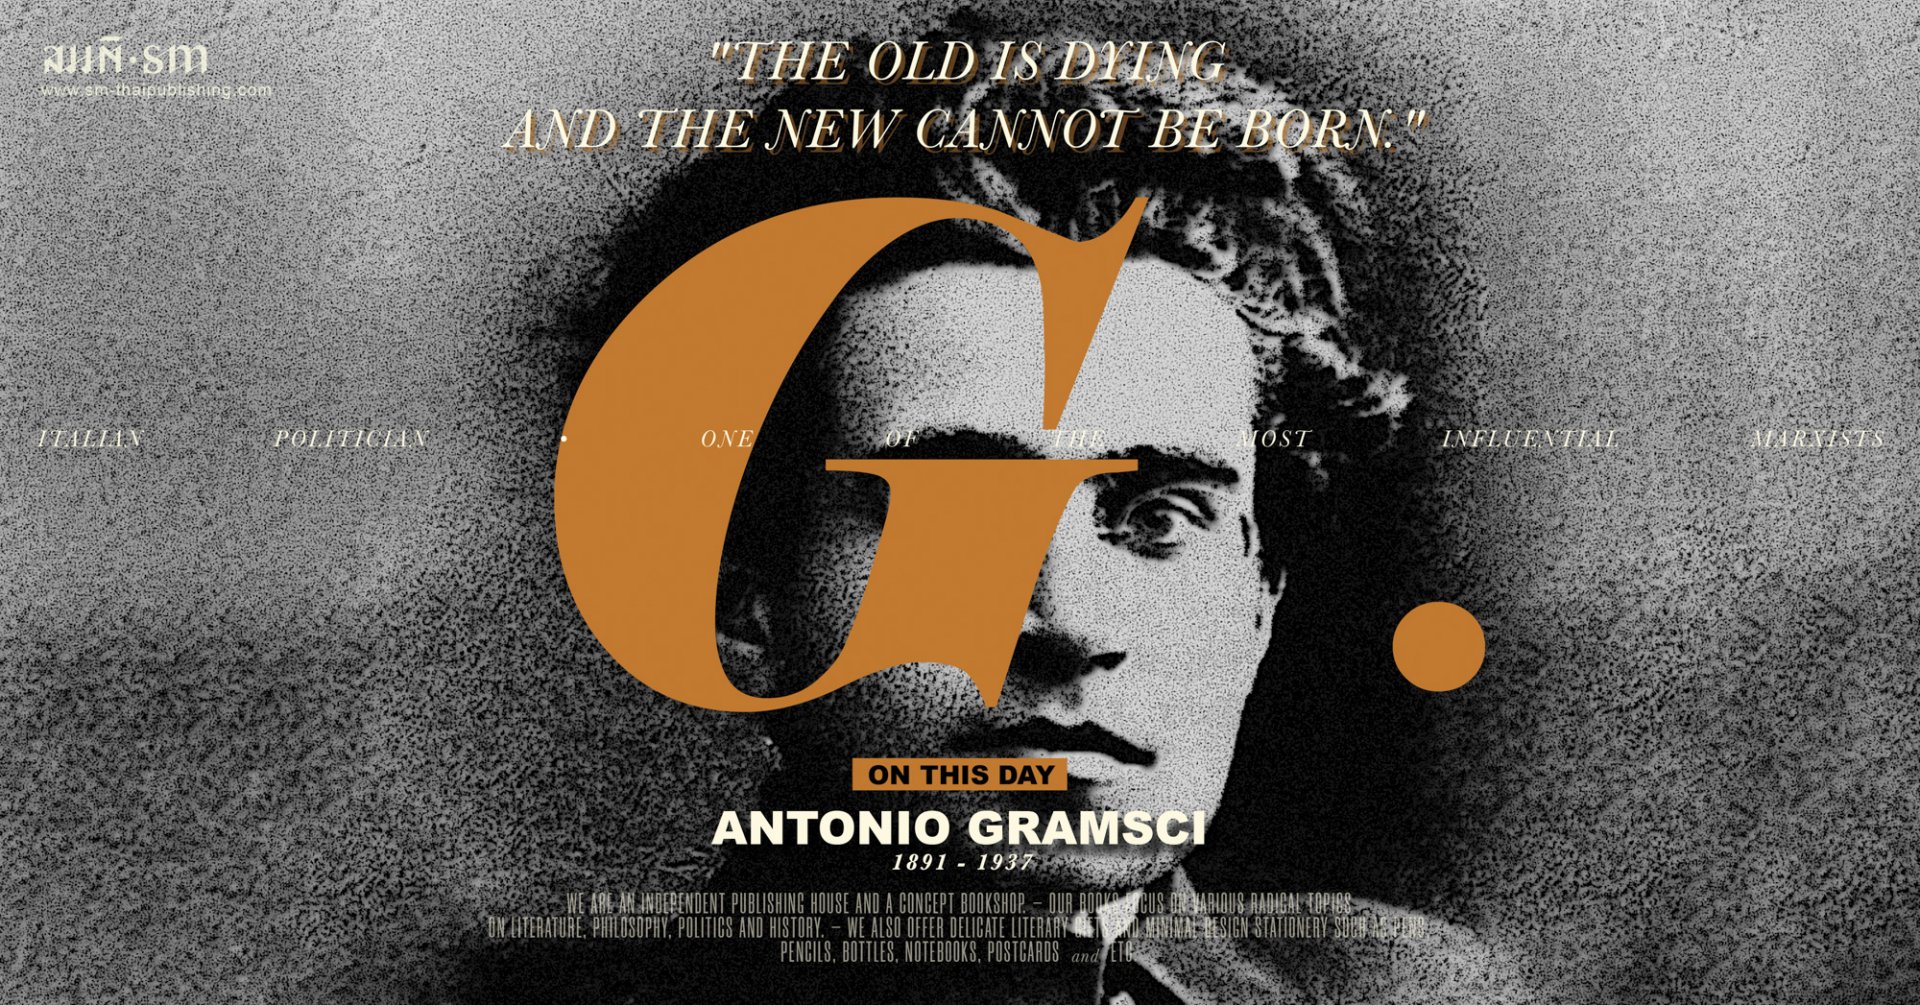 อันโตนิโอ กรัมชี่ (Antonio Gramsci)